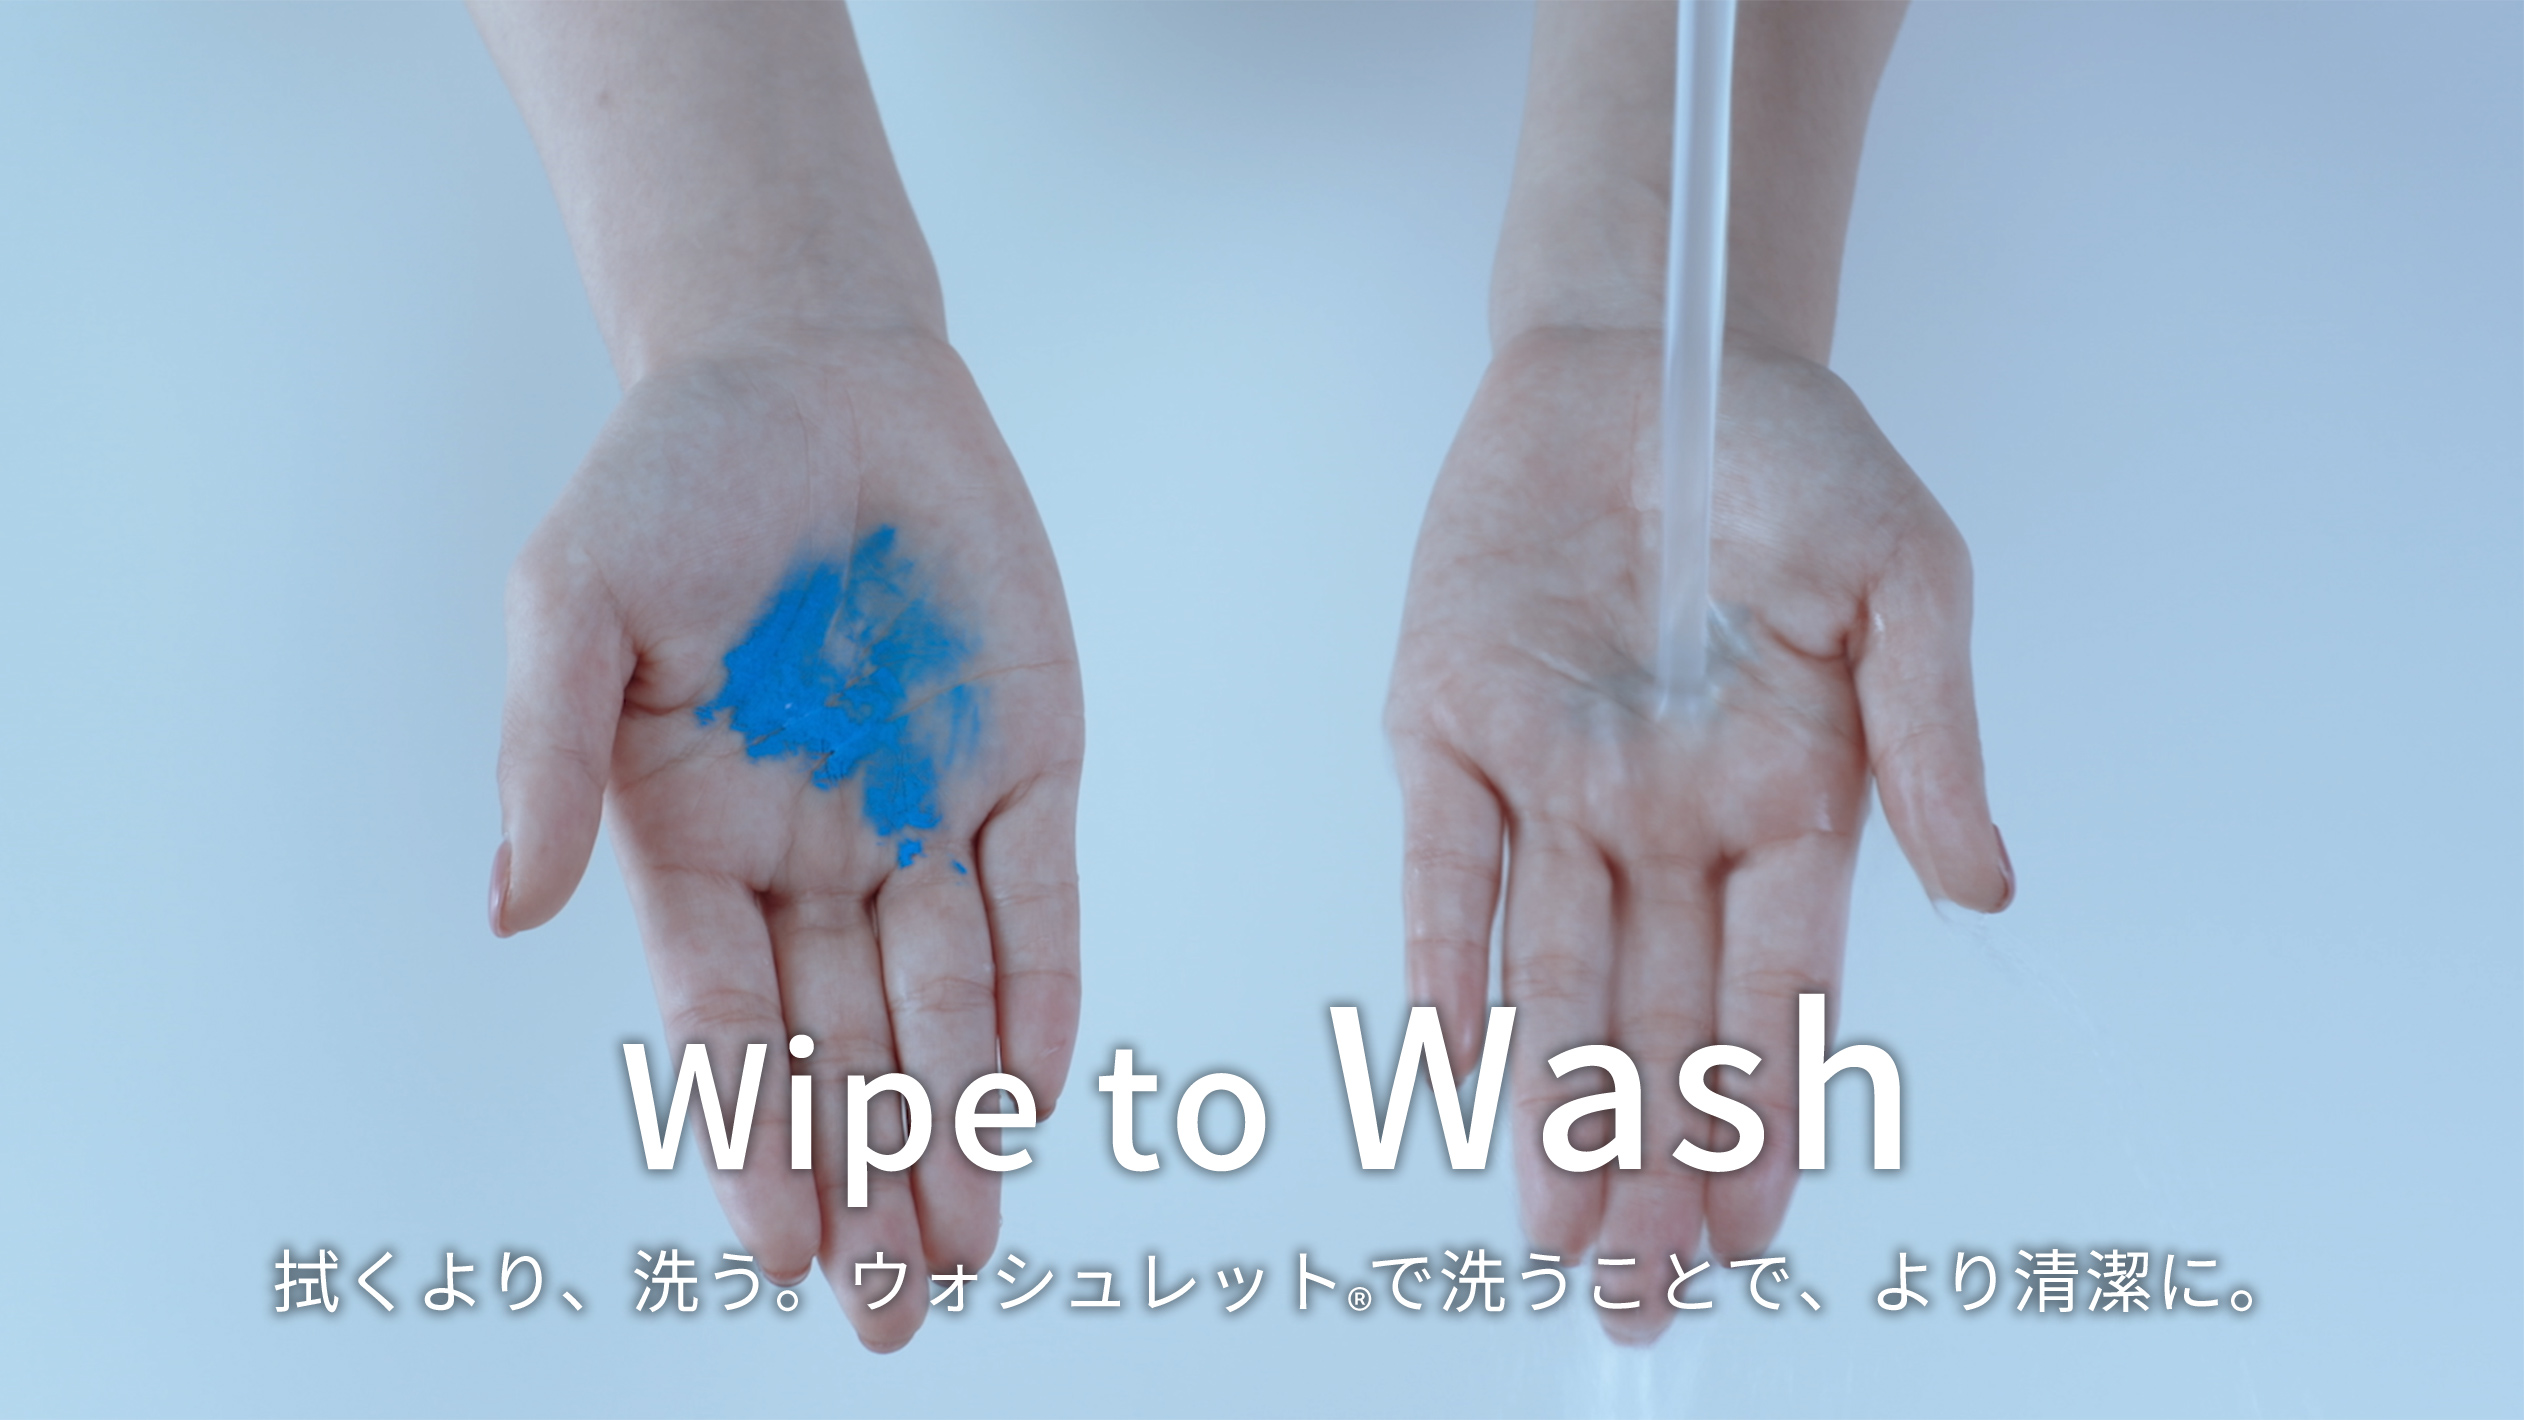 Wipe to Wash。拭くより、洗う。ウォシュレット®️で洗うことで、より清潔に。